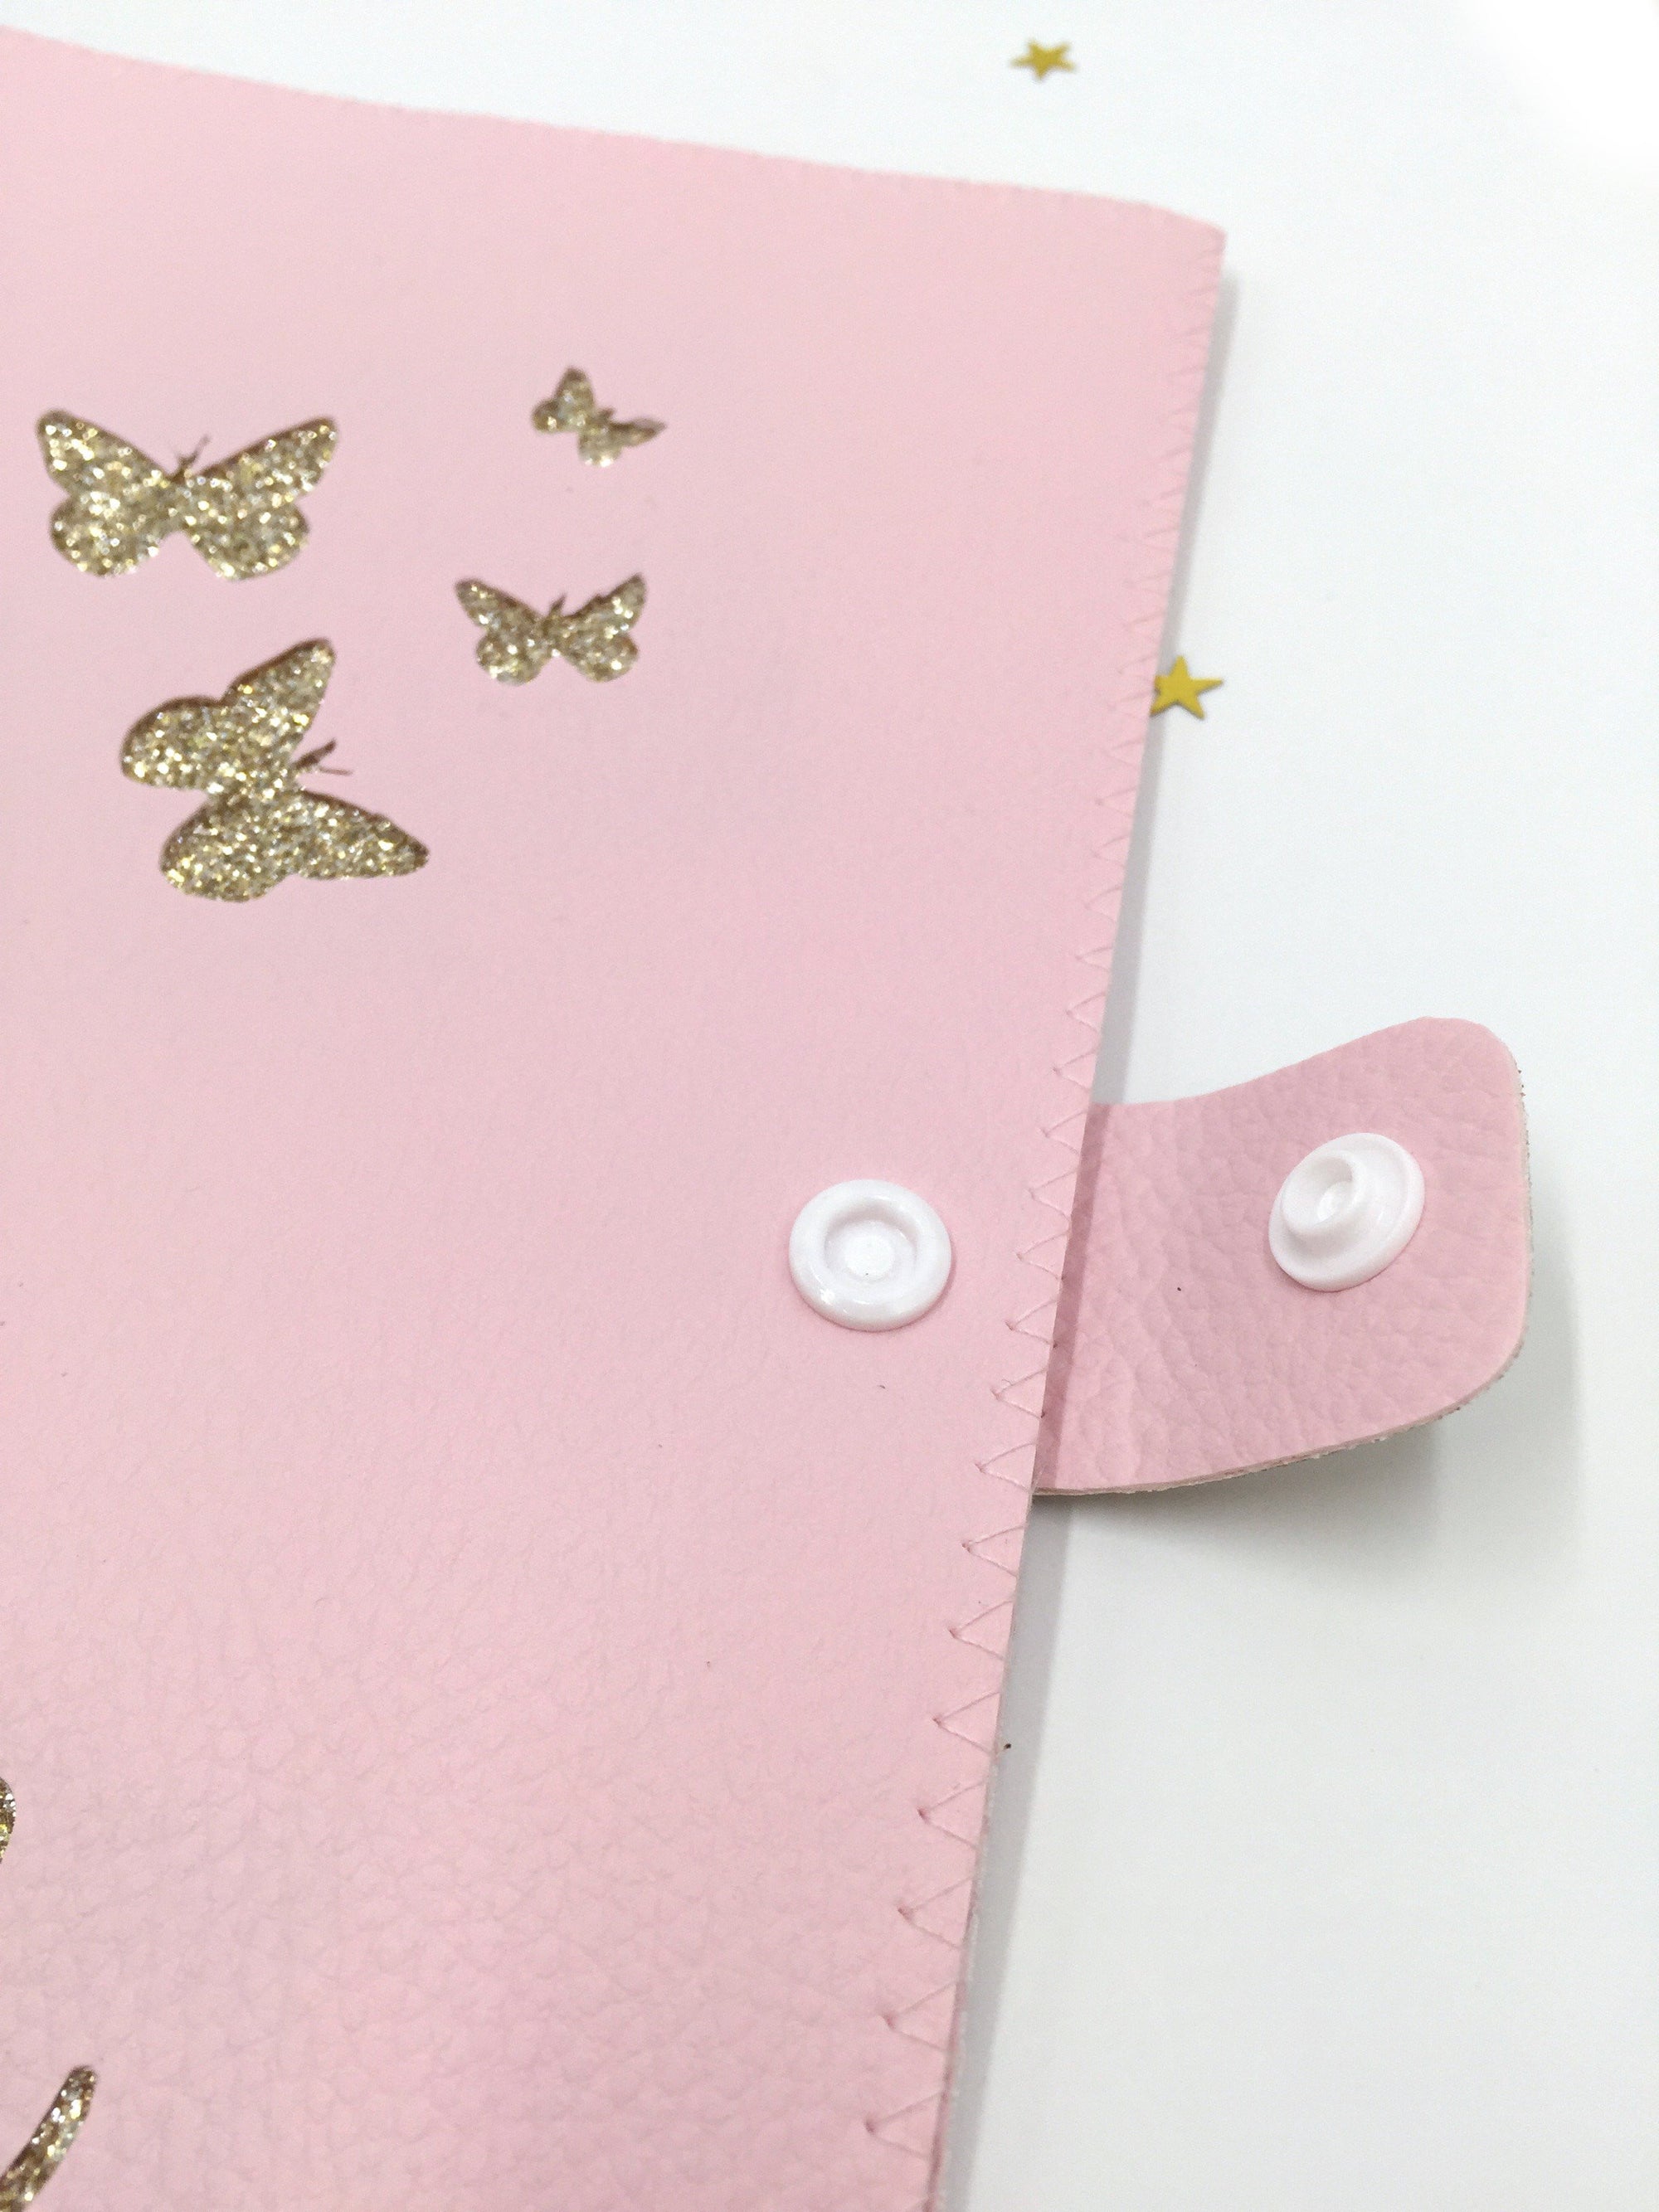 Protège carnet de santé envolée de papillons or en simili cuir rose - Crapaud Chou, le cadeau de naissance original et personnalisé